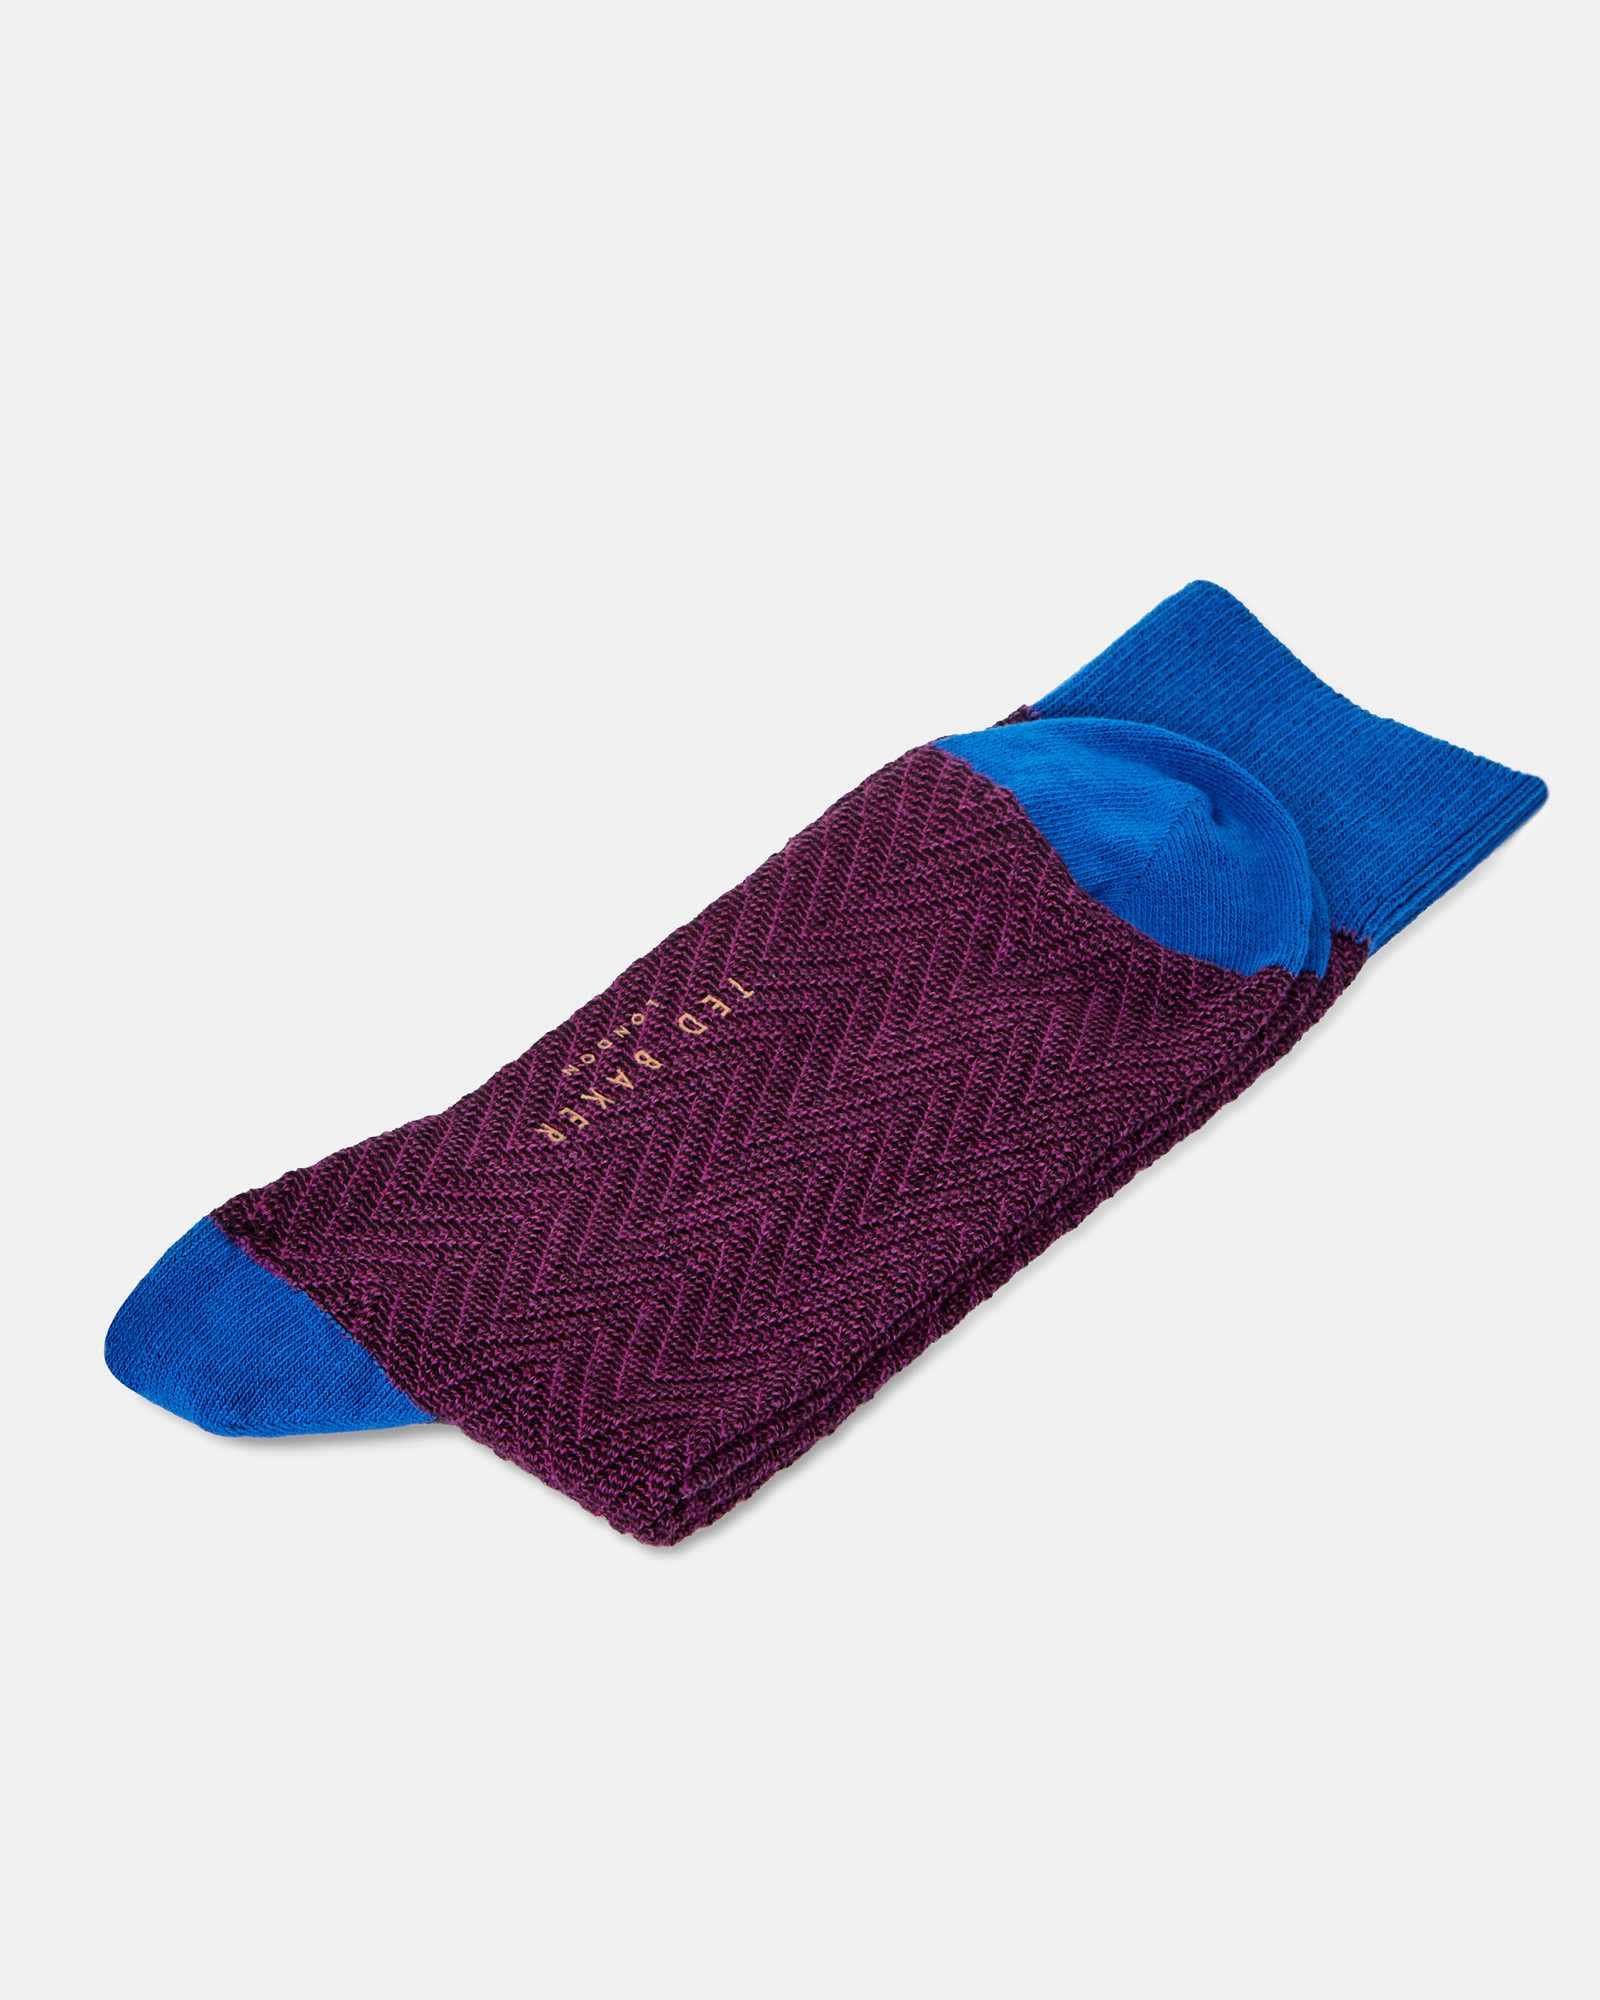 DONI Colour block cotton socks